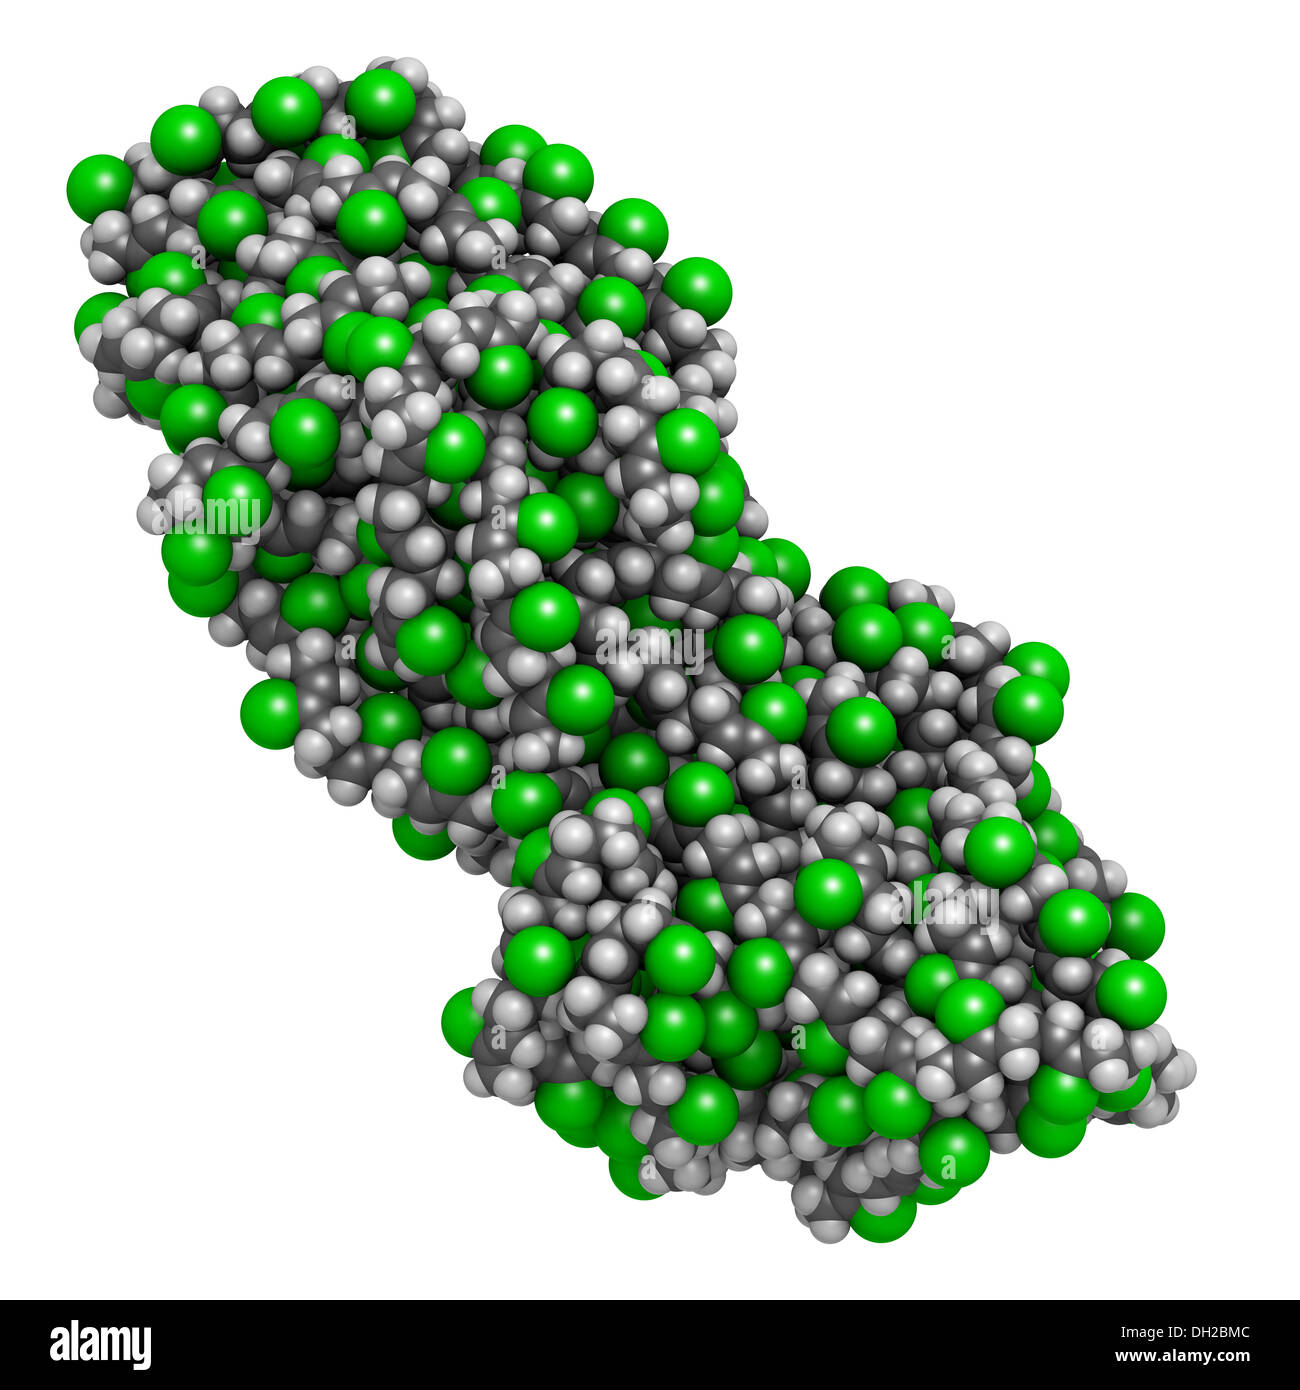 Neopren (Polychloropren) Synthese-Kautschuk, chemische Struktur. Atome  werden als Kugeln mit konventionellen Farbkodierung dargestellt  Stockfotografie - Alamy